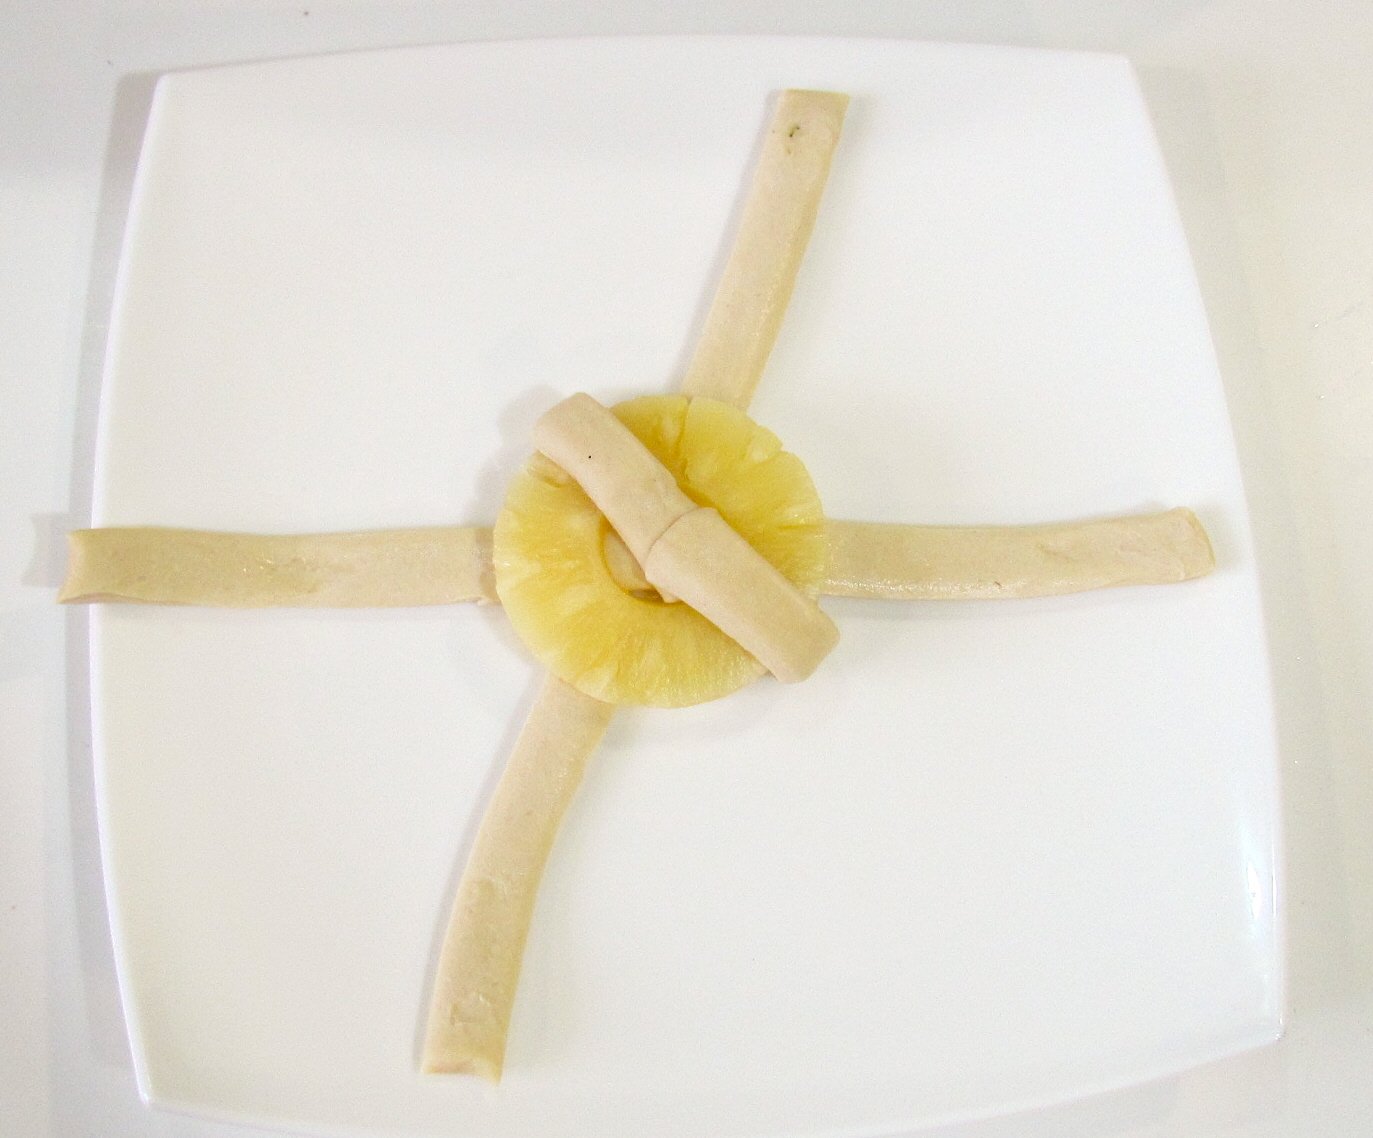 Dessertbroodjes met ananasringen uit blik (oven)